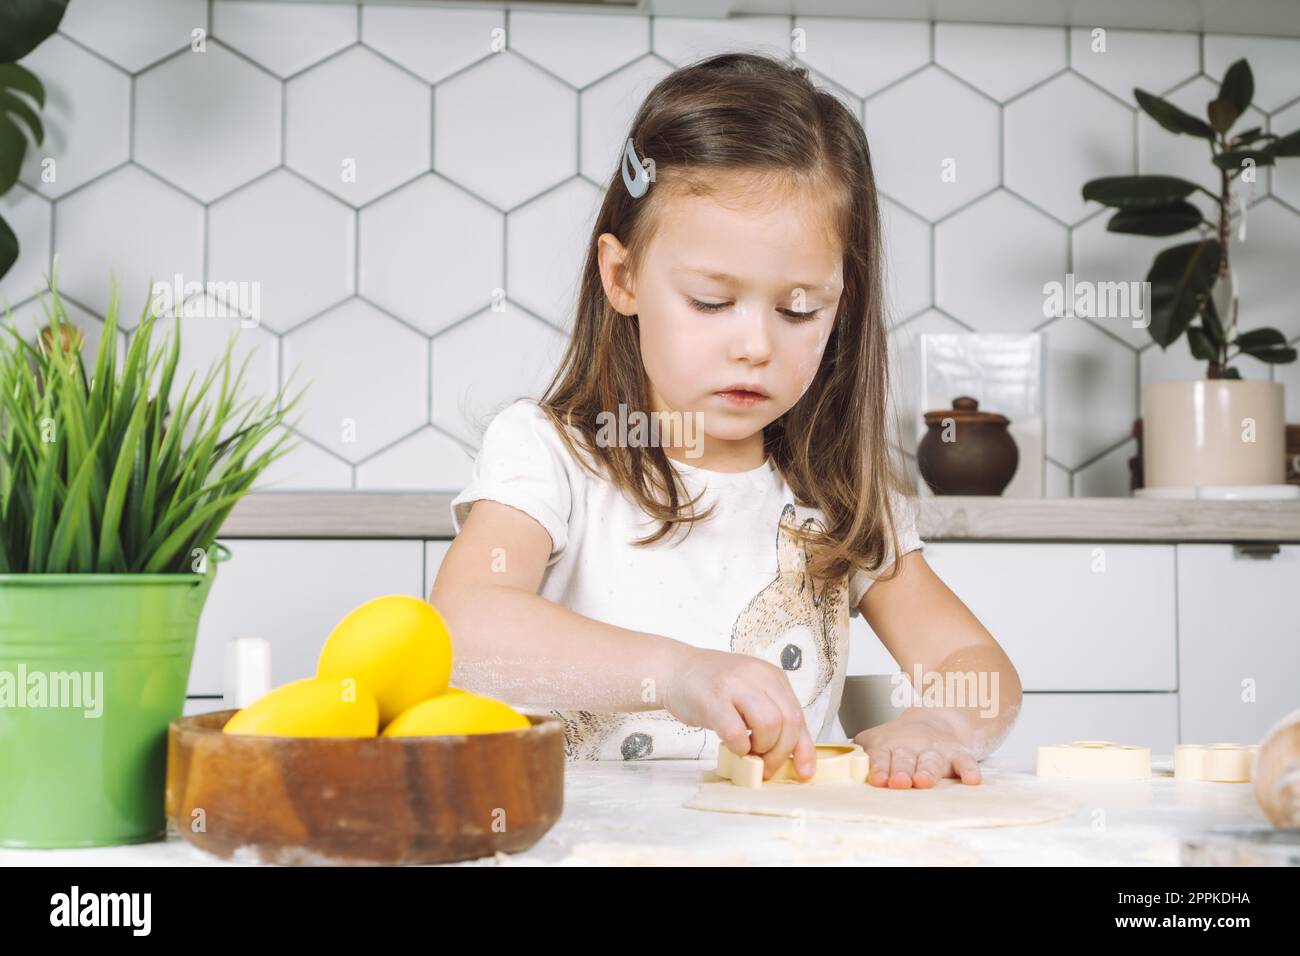 Porträt eines freudigen, konzentrierten kleinen Mädchens, geformter Teigkeks, Backbecher. Vorbereitung auf Osterfeiertage Stockfoto